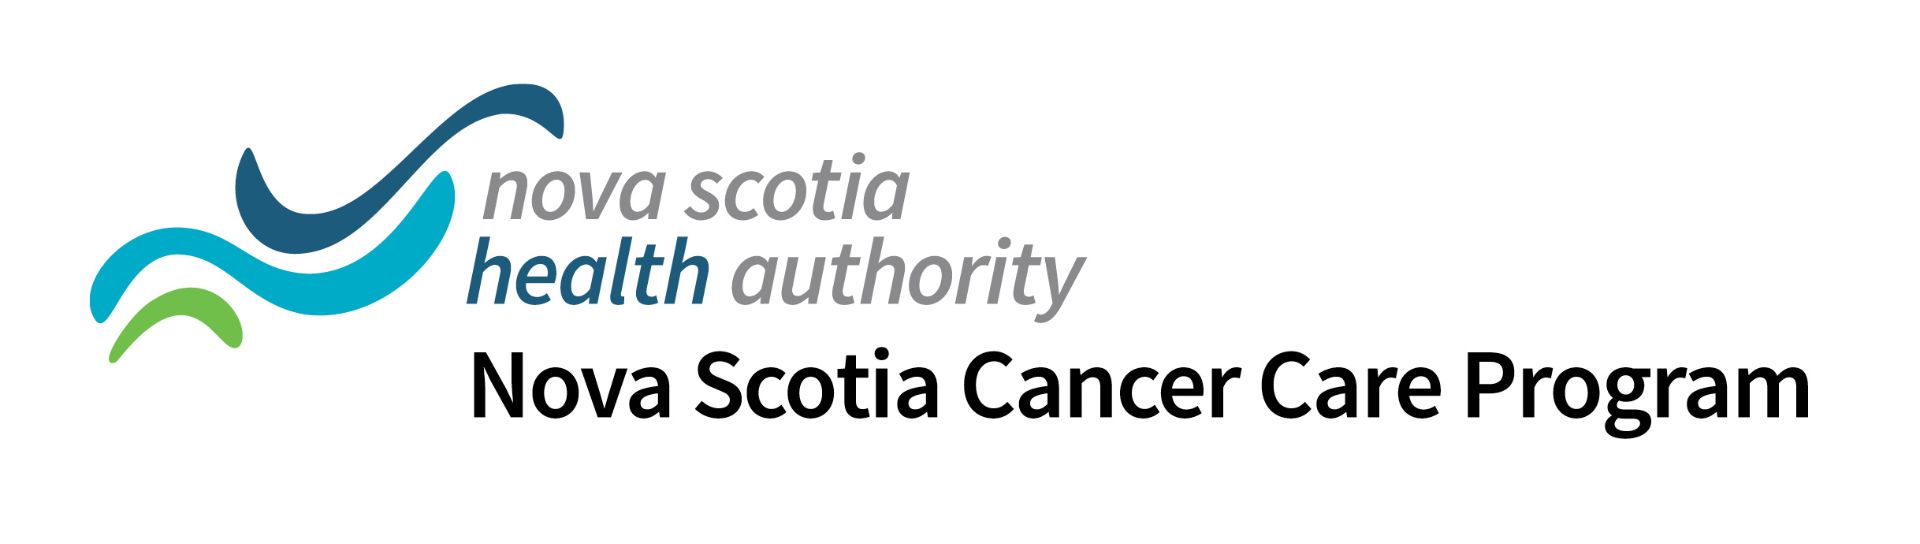 Nova Scotia Health Cancer Care Program logo